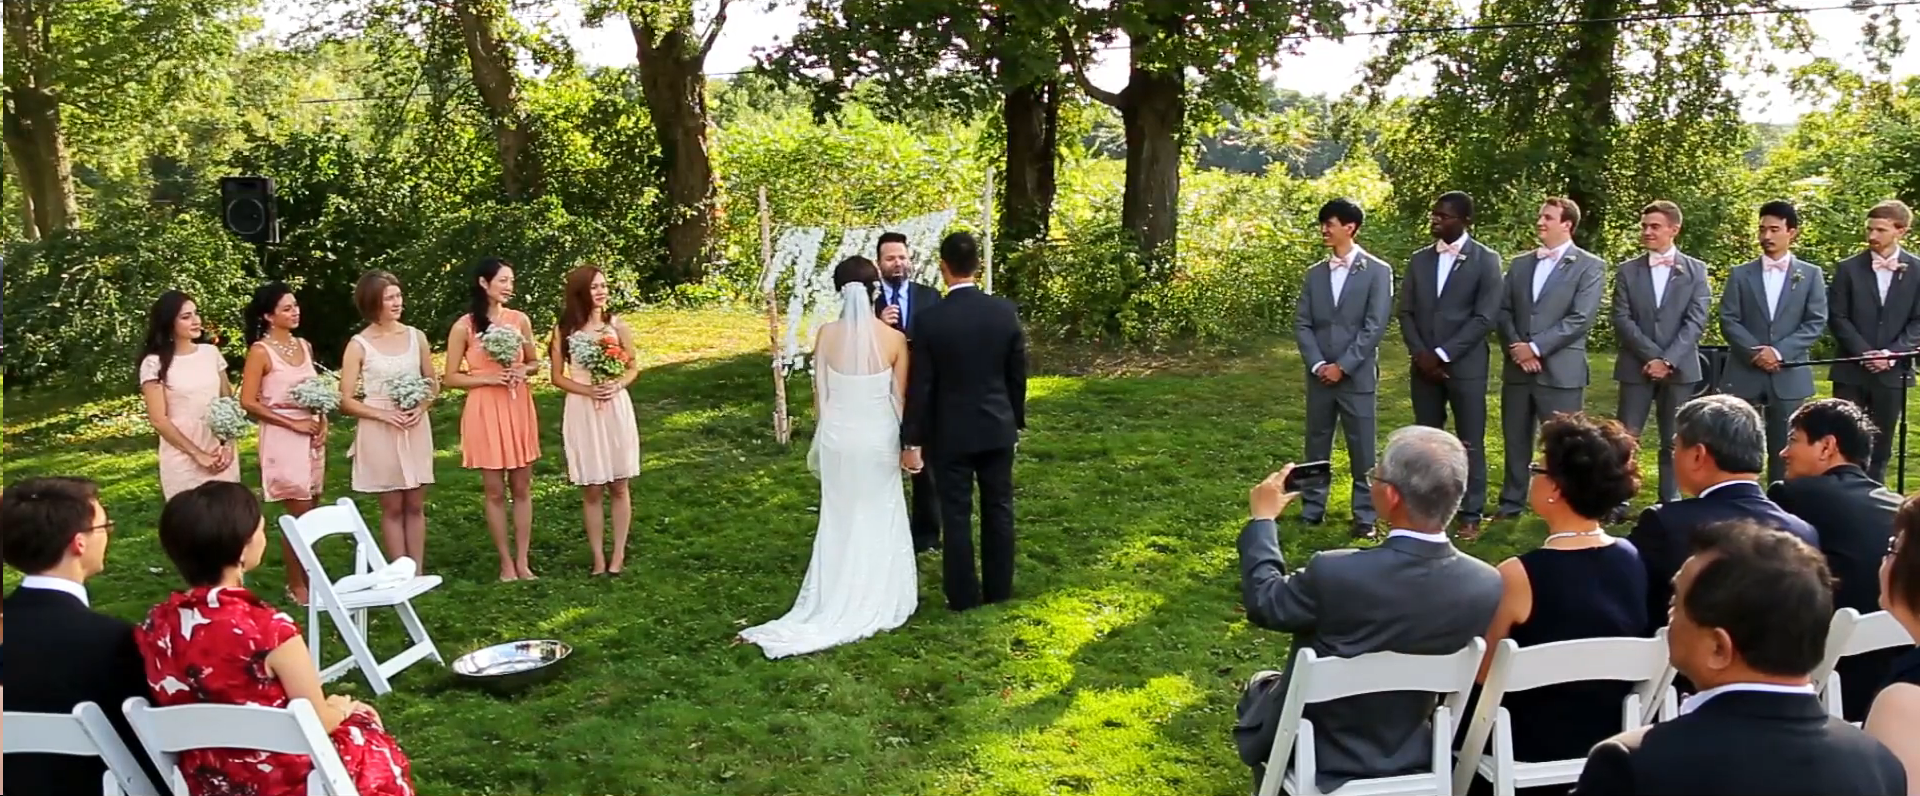 2015 08 11 14.57.06 - A Rustic Tralee Farm Wedding Video